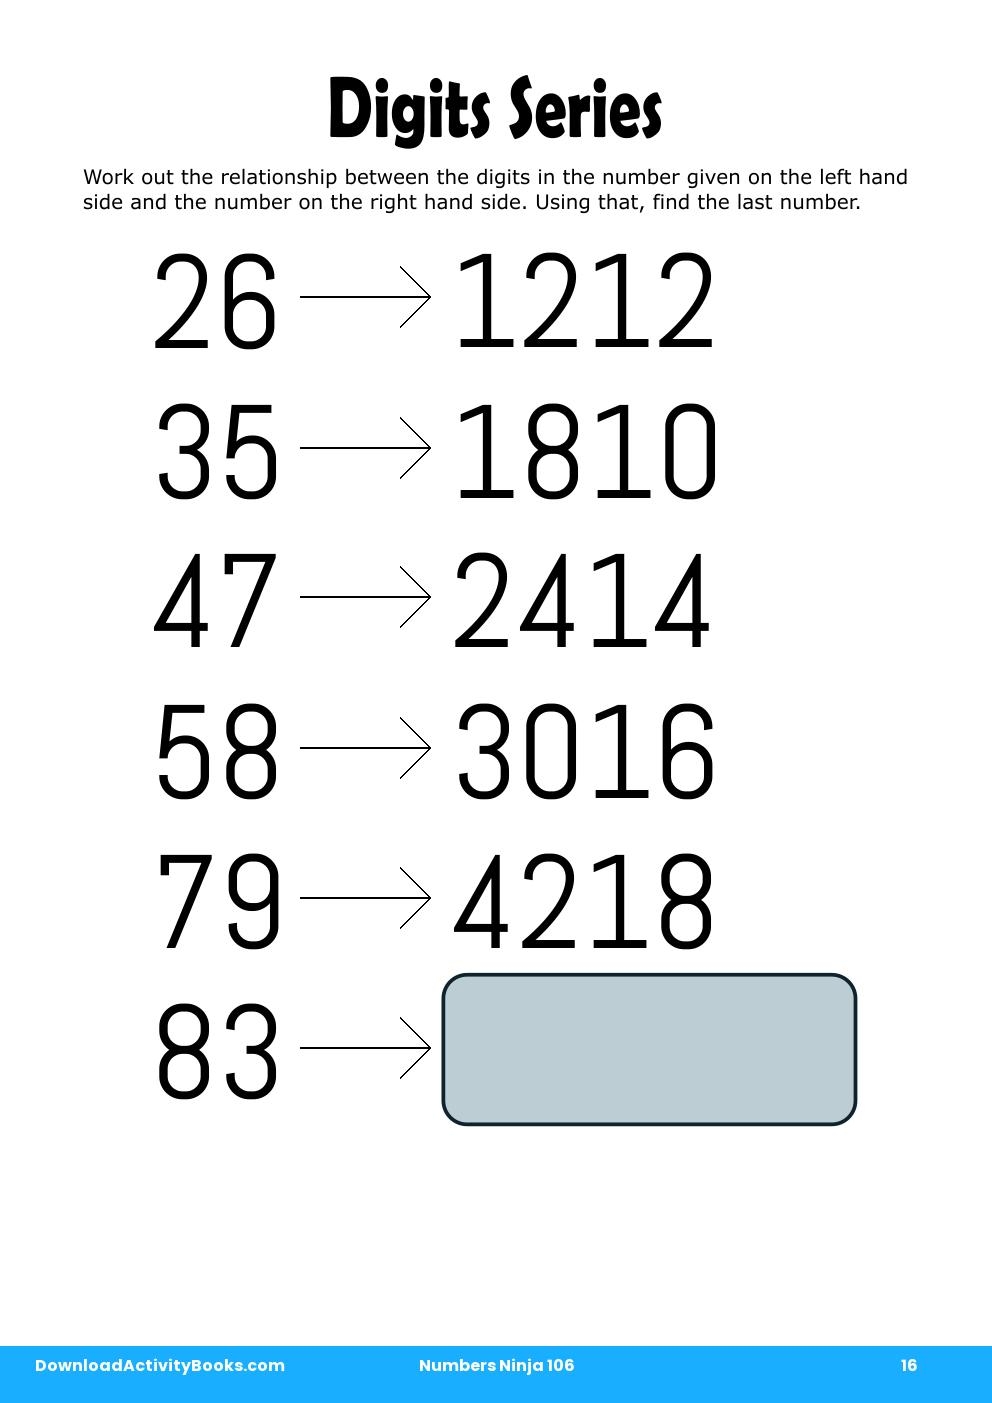 Digits Series in Numbers Ninja 106